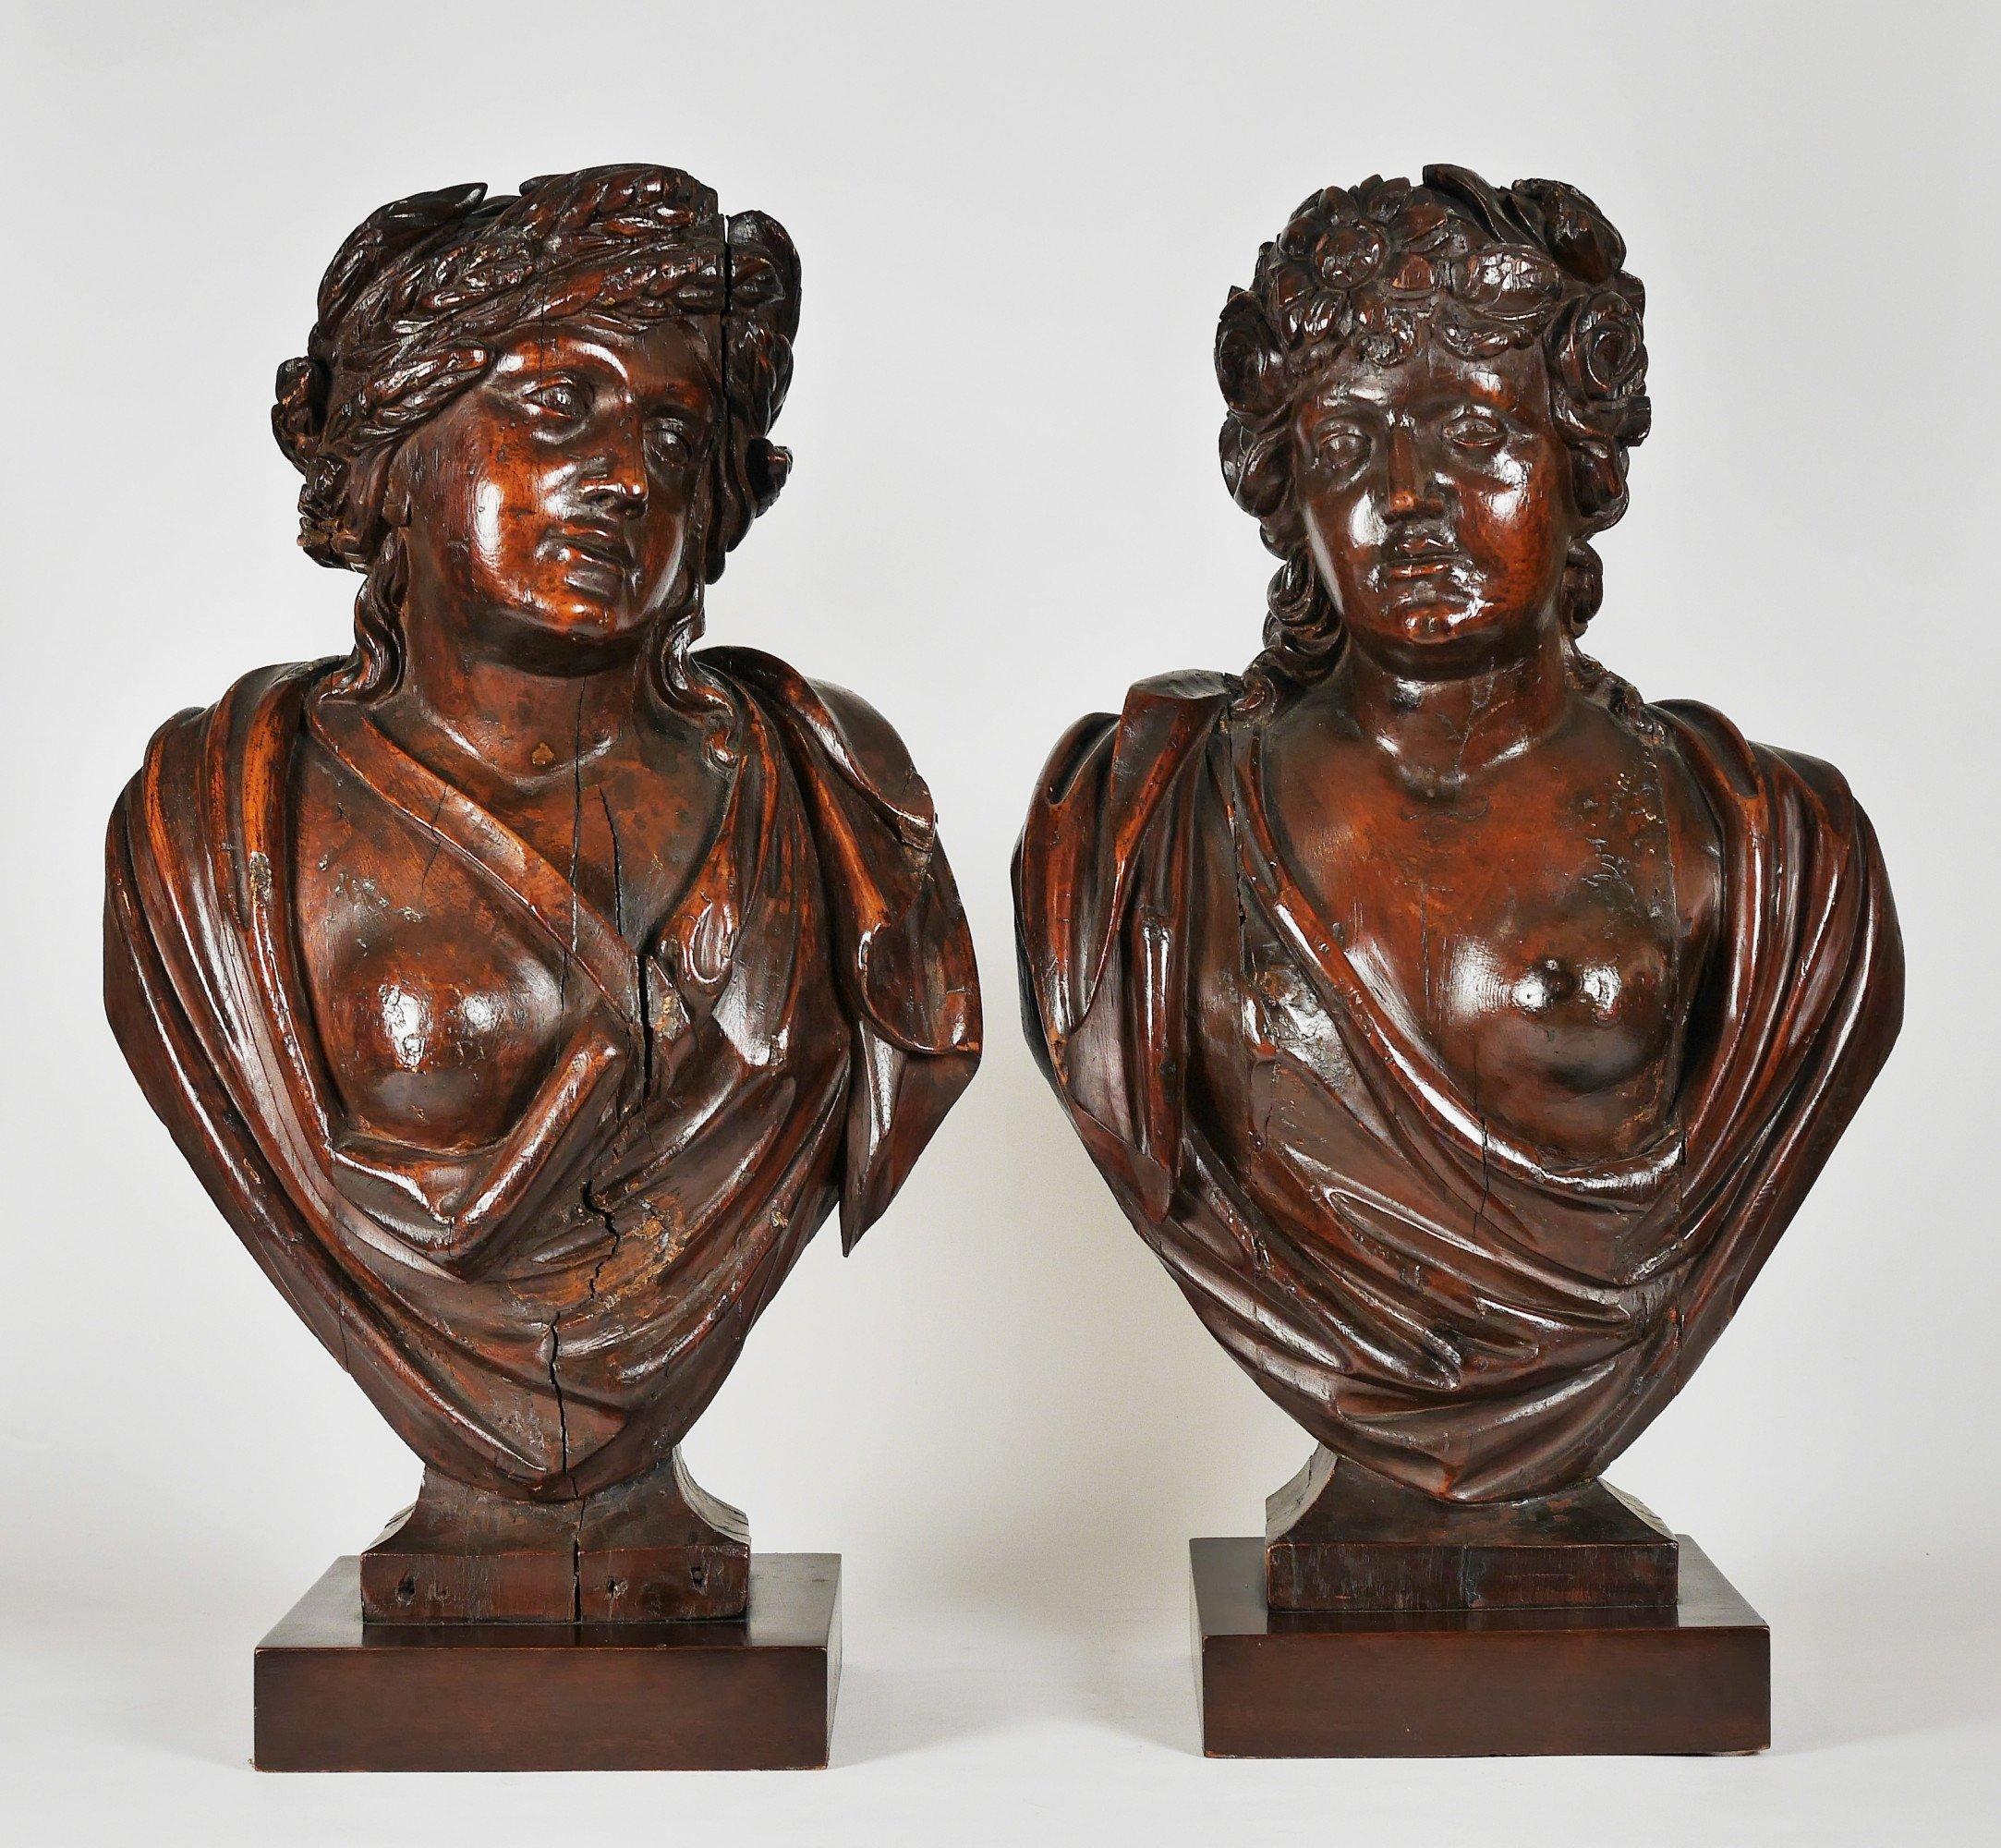 Bustes néoclassiques italiens sculptés représentant des femmes semi-nues du 18ème siècle